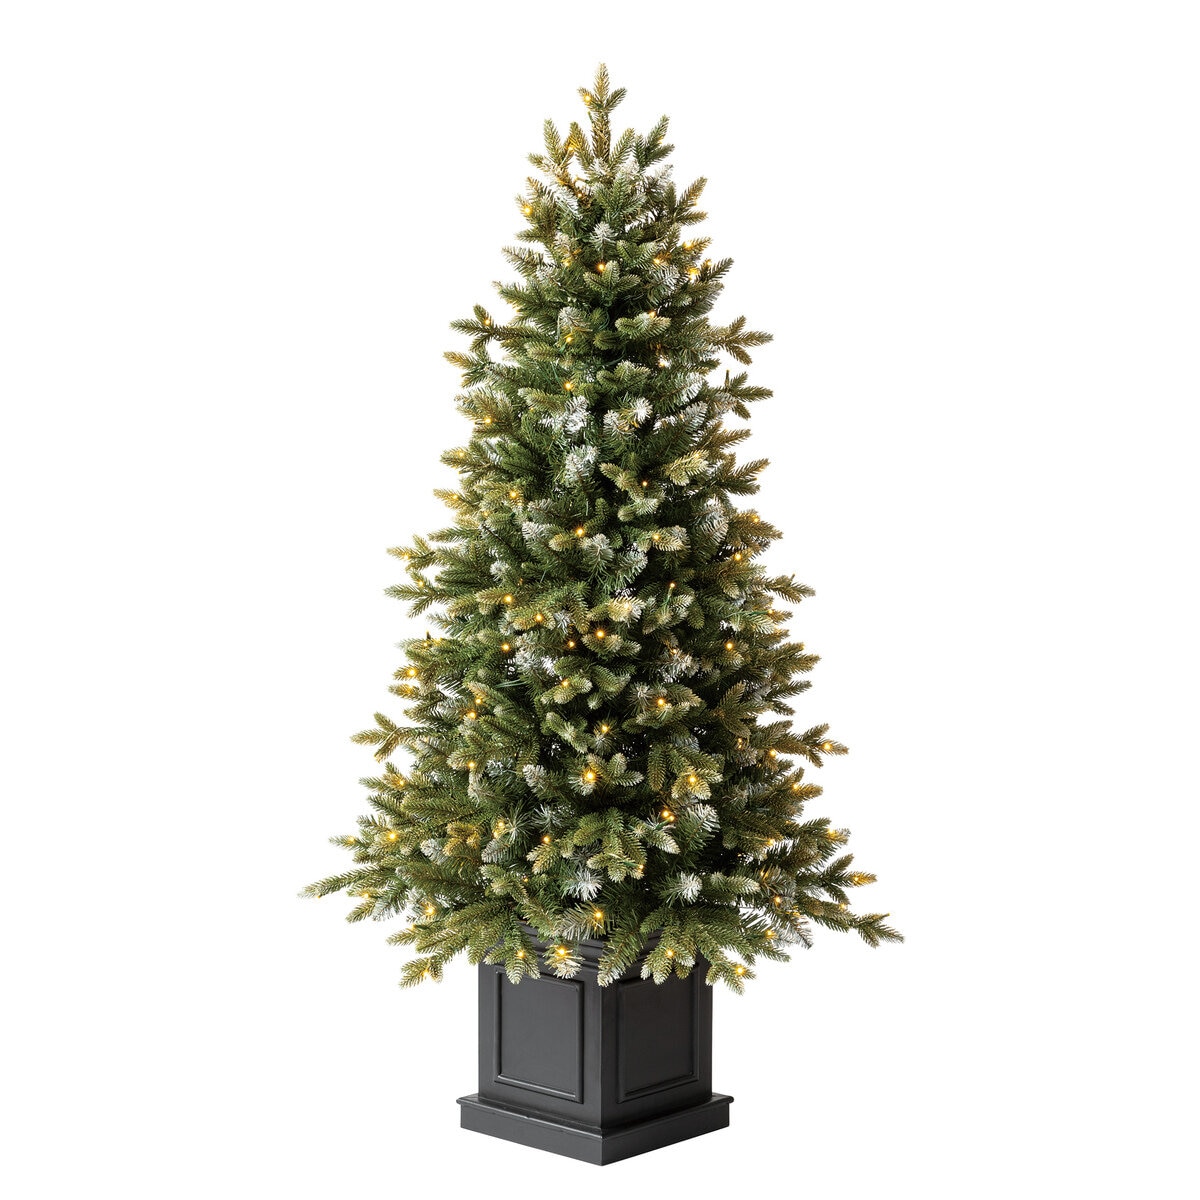 【新品】コストコ クリスマスツリー 電飾付き 約137cm LED 200球